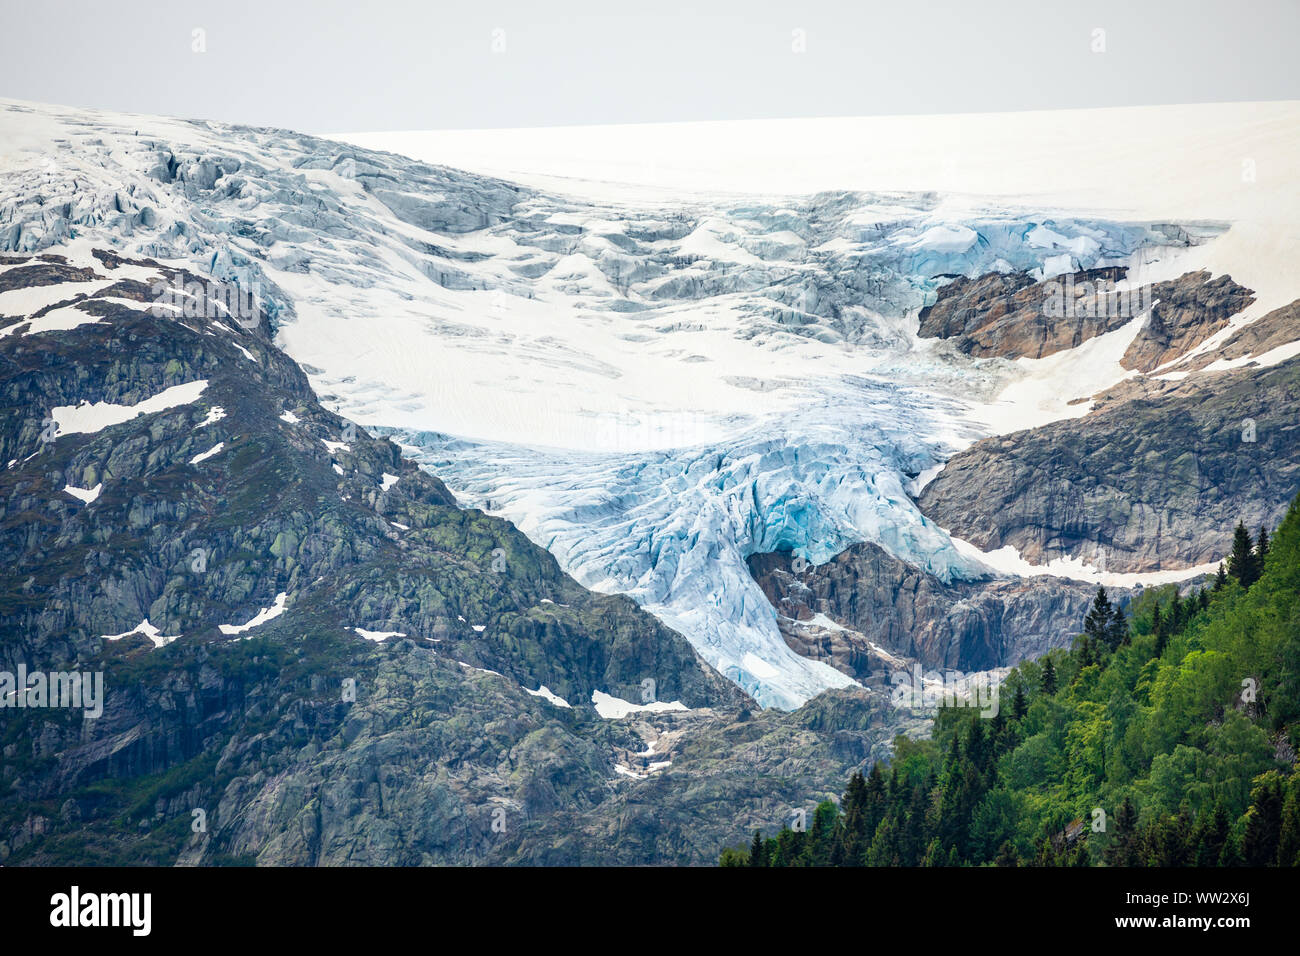 El glaciar Folgefonna cap en las montañas con bosques en primer plano, Odda, región de Hardanger, condado de Hordaland, Noruega Foto de stock